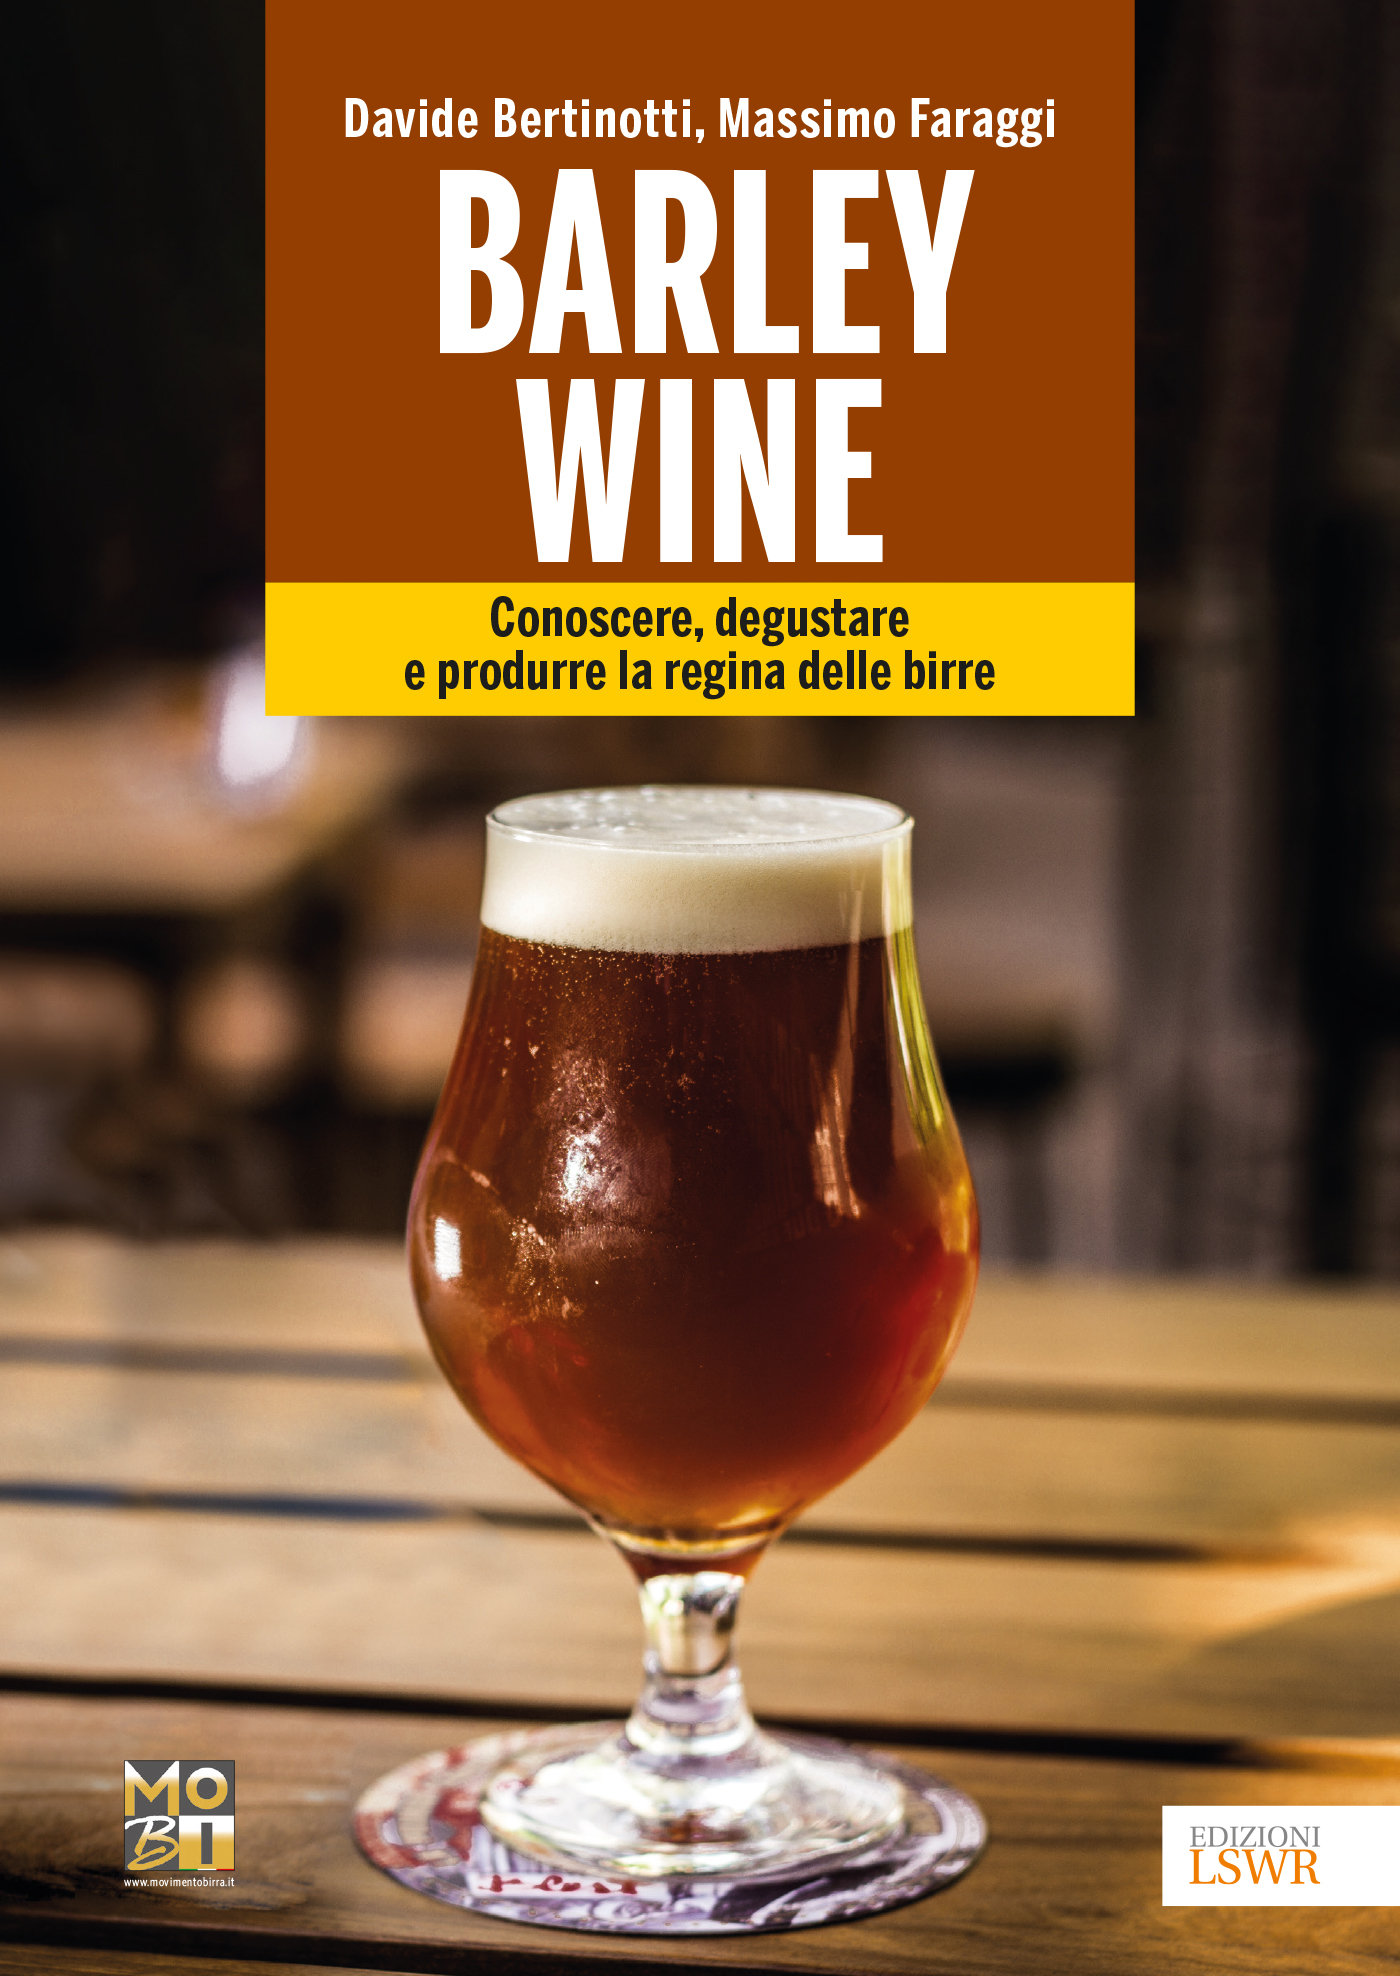 Barley wine – Il libro: conoscere, degustare e produrre la regina delle birre